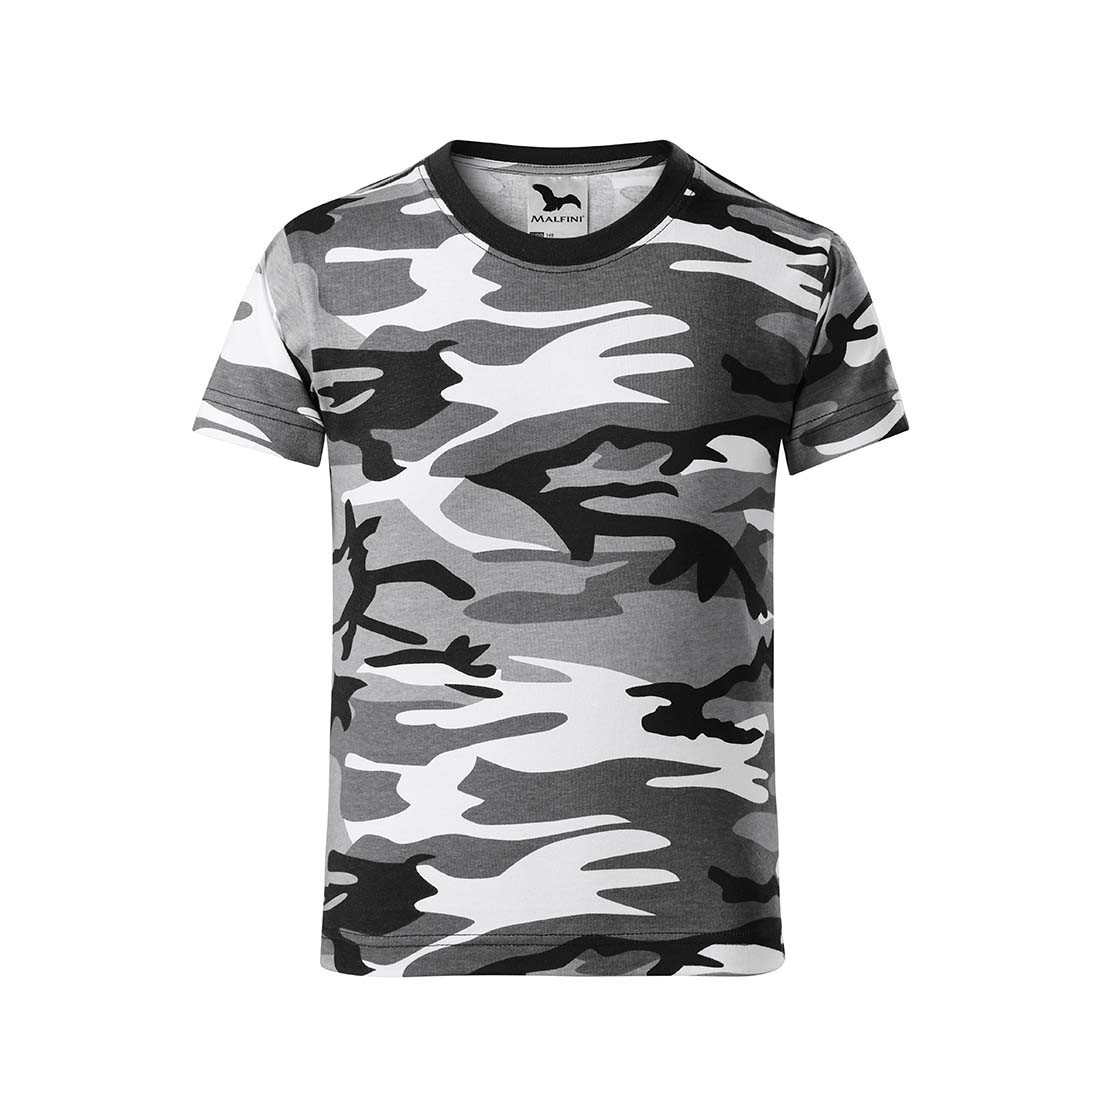 T-shirt camouflage pour enfants - Les vêtements de protection